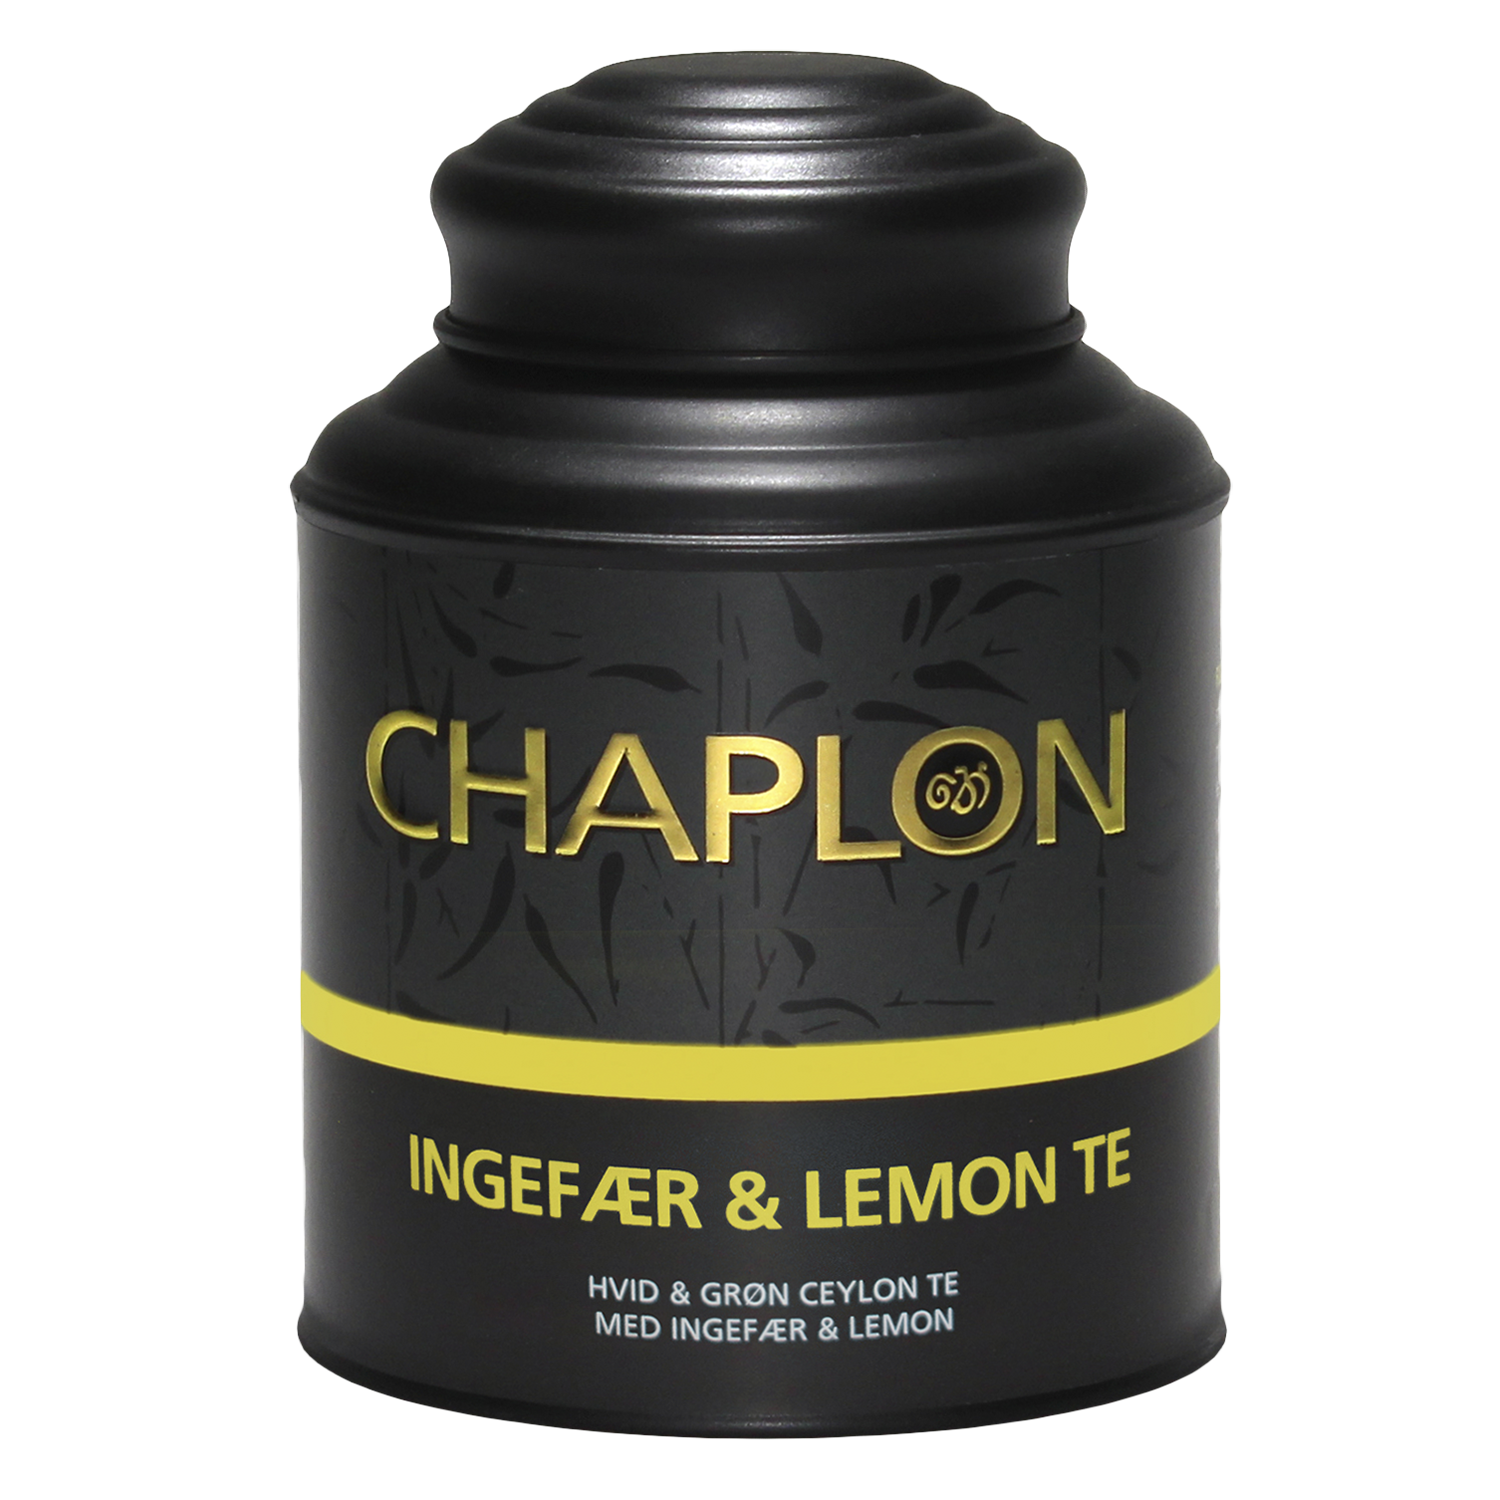 Ingefær & Lemon Øko/Organic 160g Chaplon